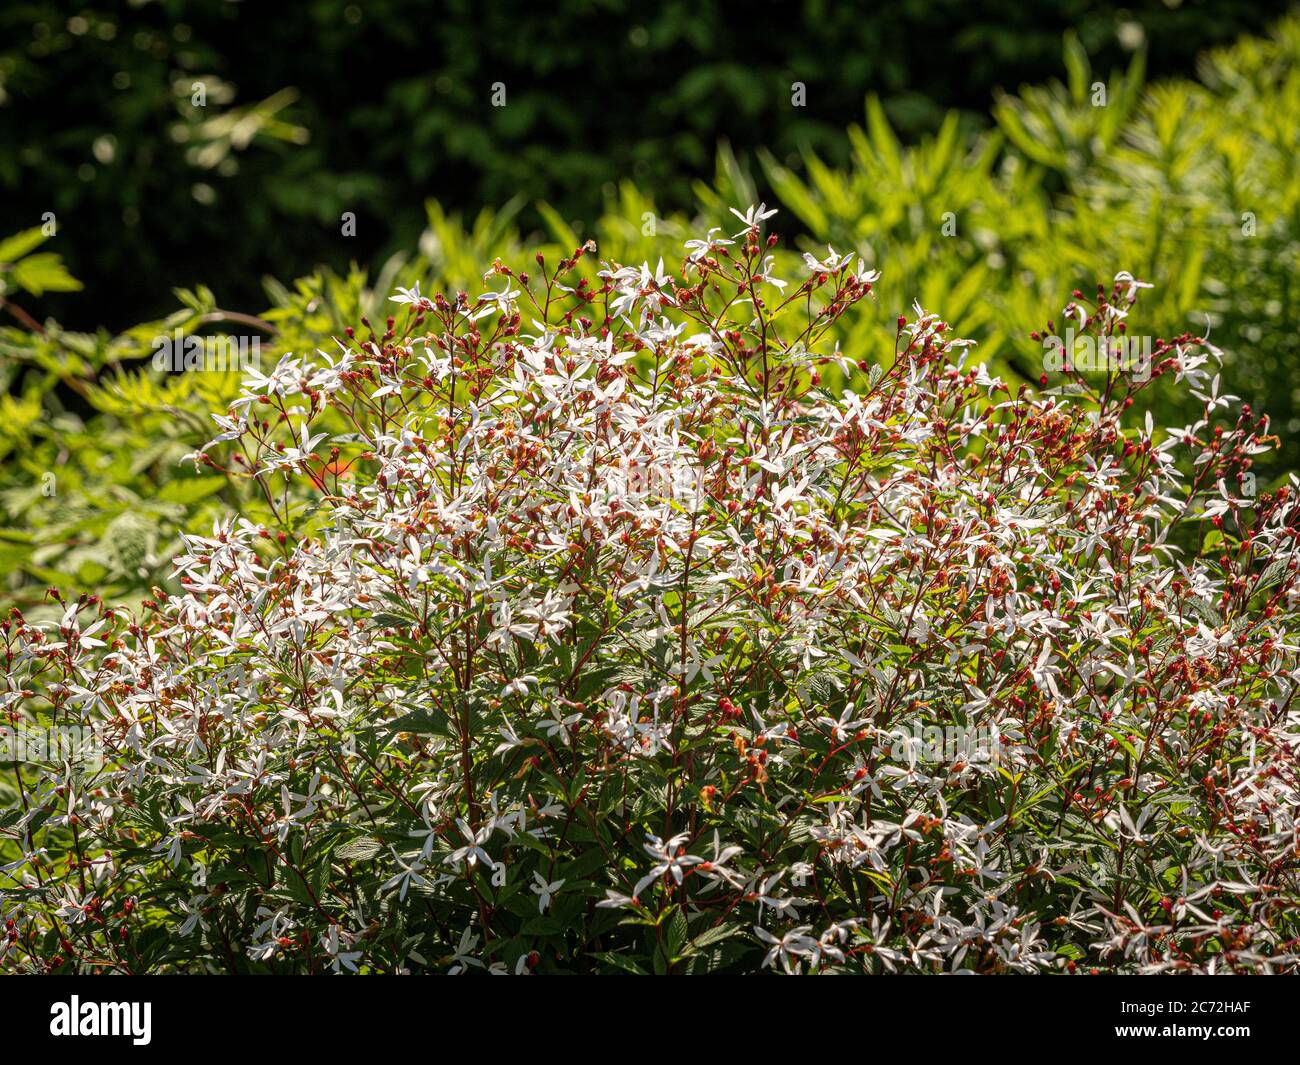 Gillenia trifolata. Arbusto rosso con fiori bianchi a forma di stella. Foto Stock